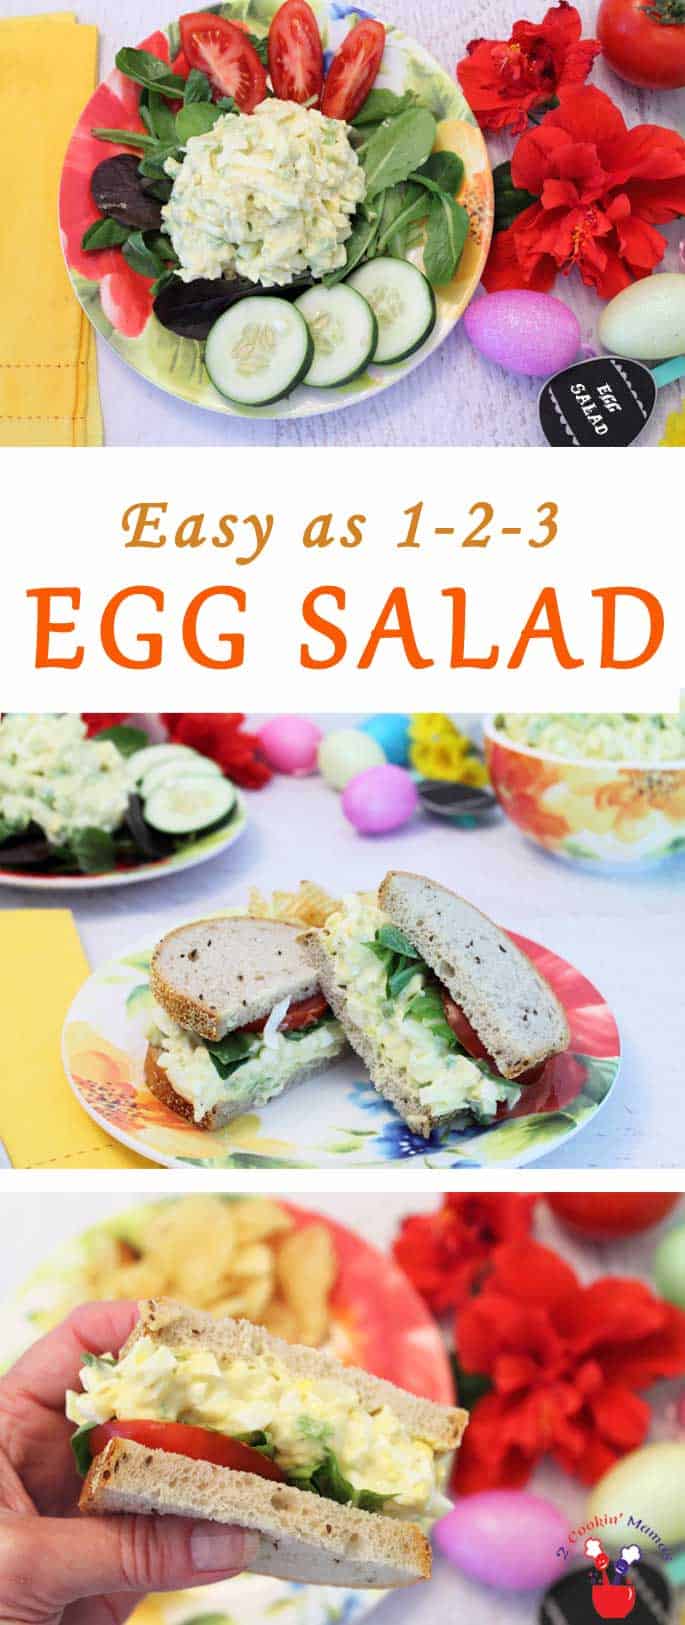 Easy Egg Salad & Egg Cooking Tips